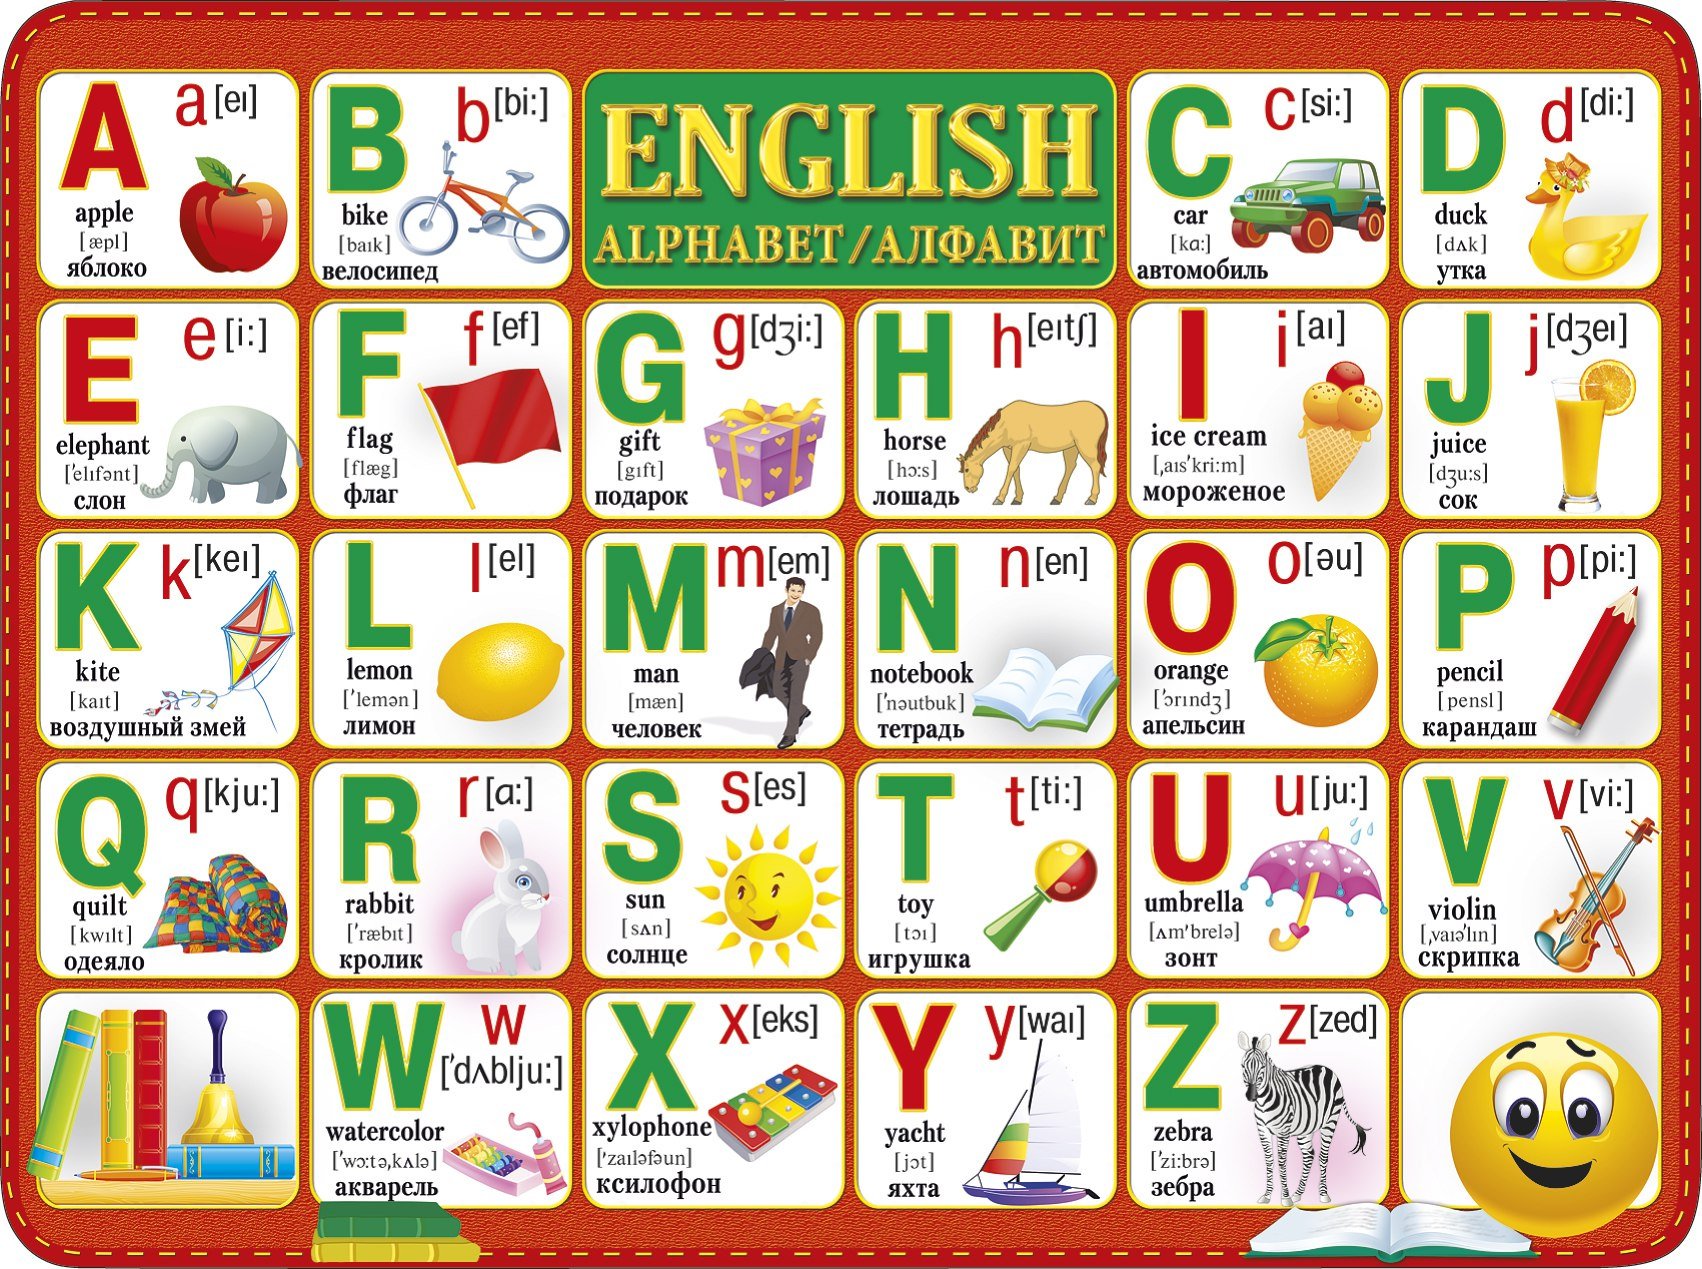 Q в английском алфавите. Английский алфавит. Английская Азбука для детей. Английский алфавит в картинках. Алфавит английского языка для детей.